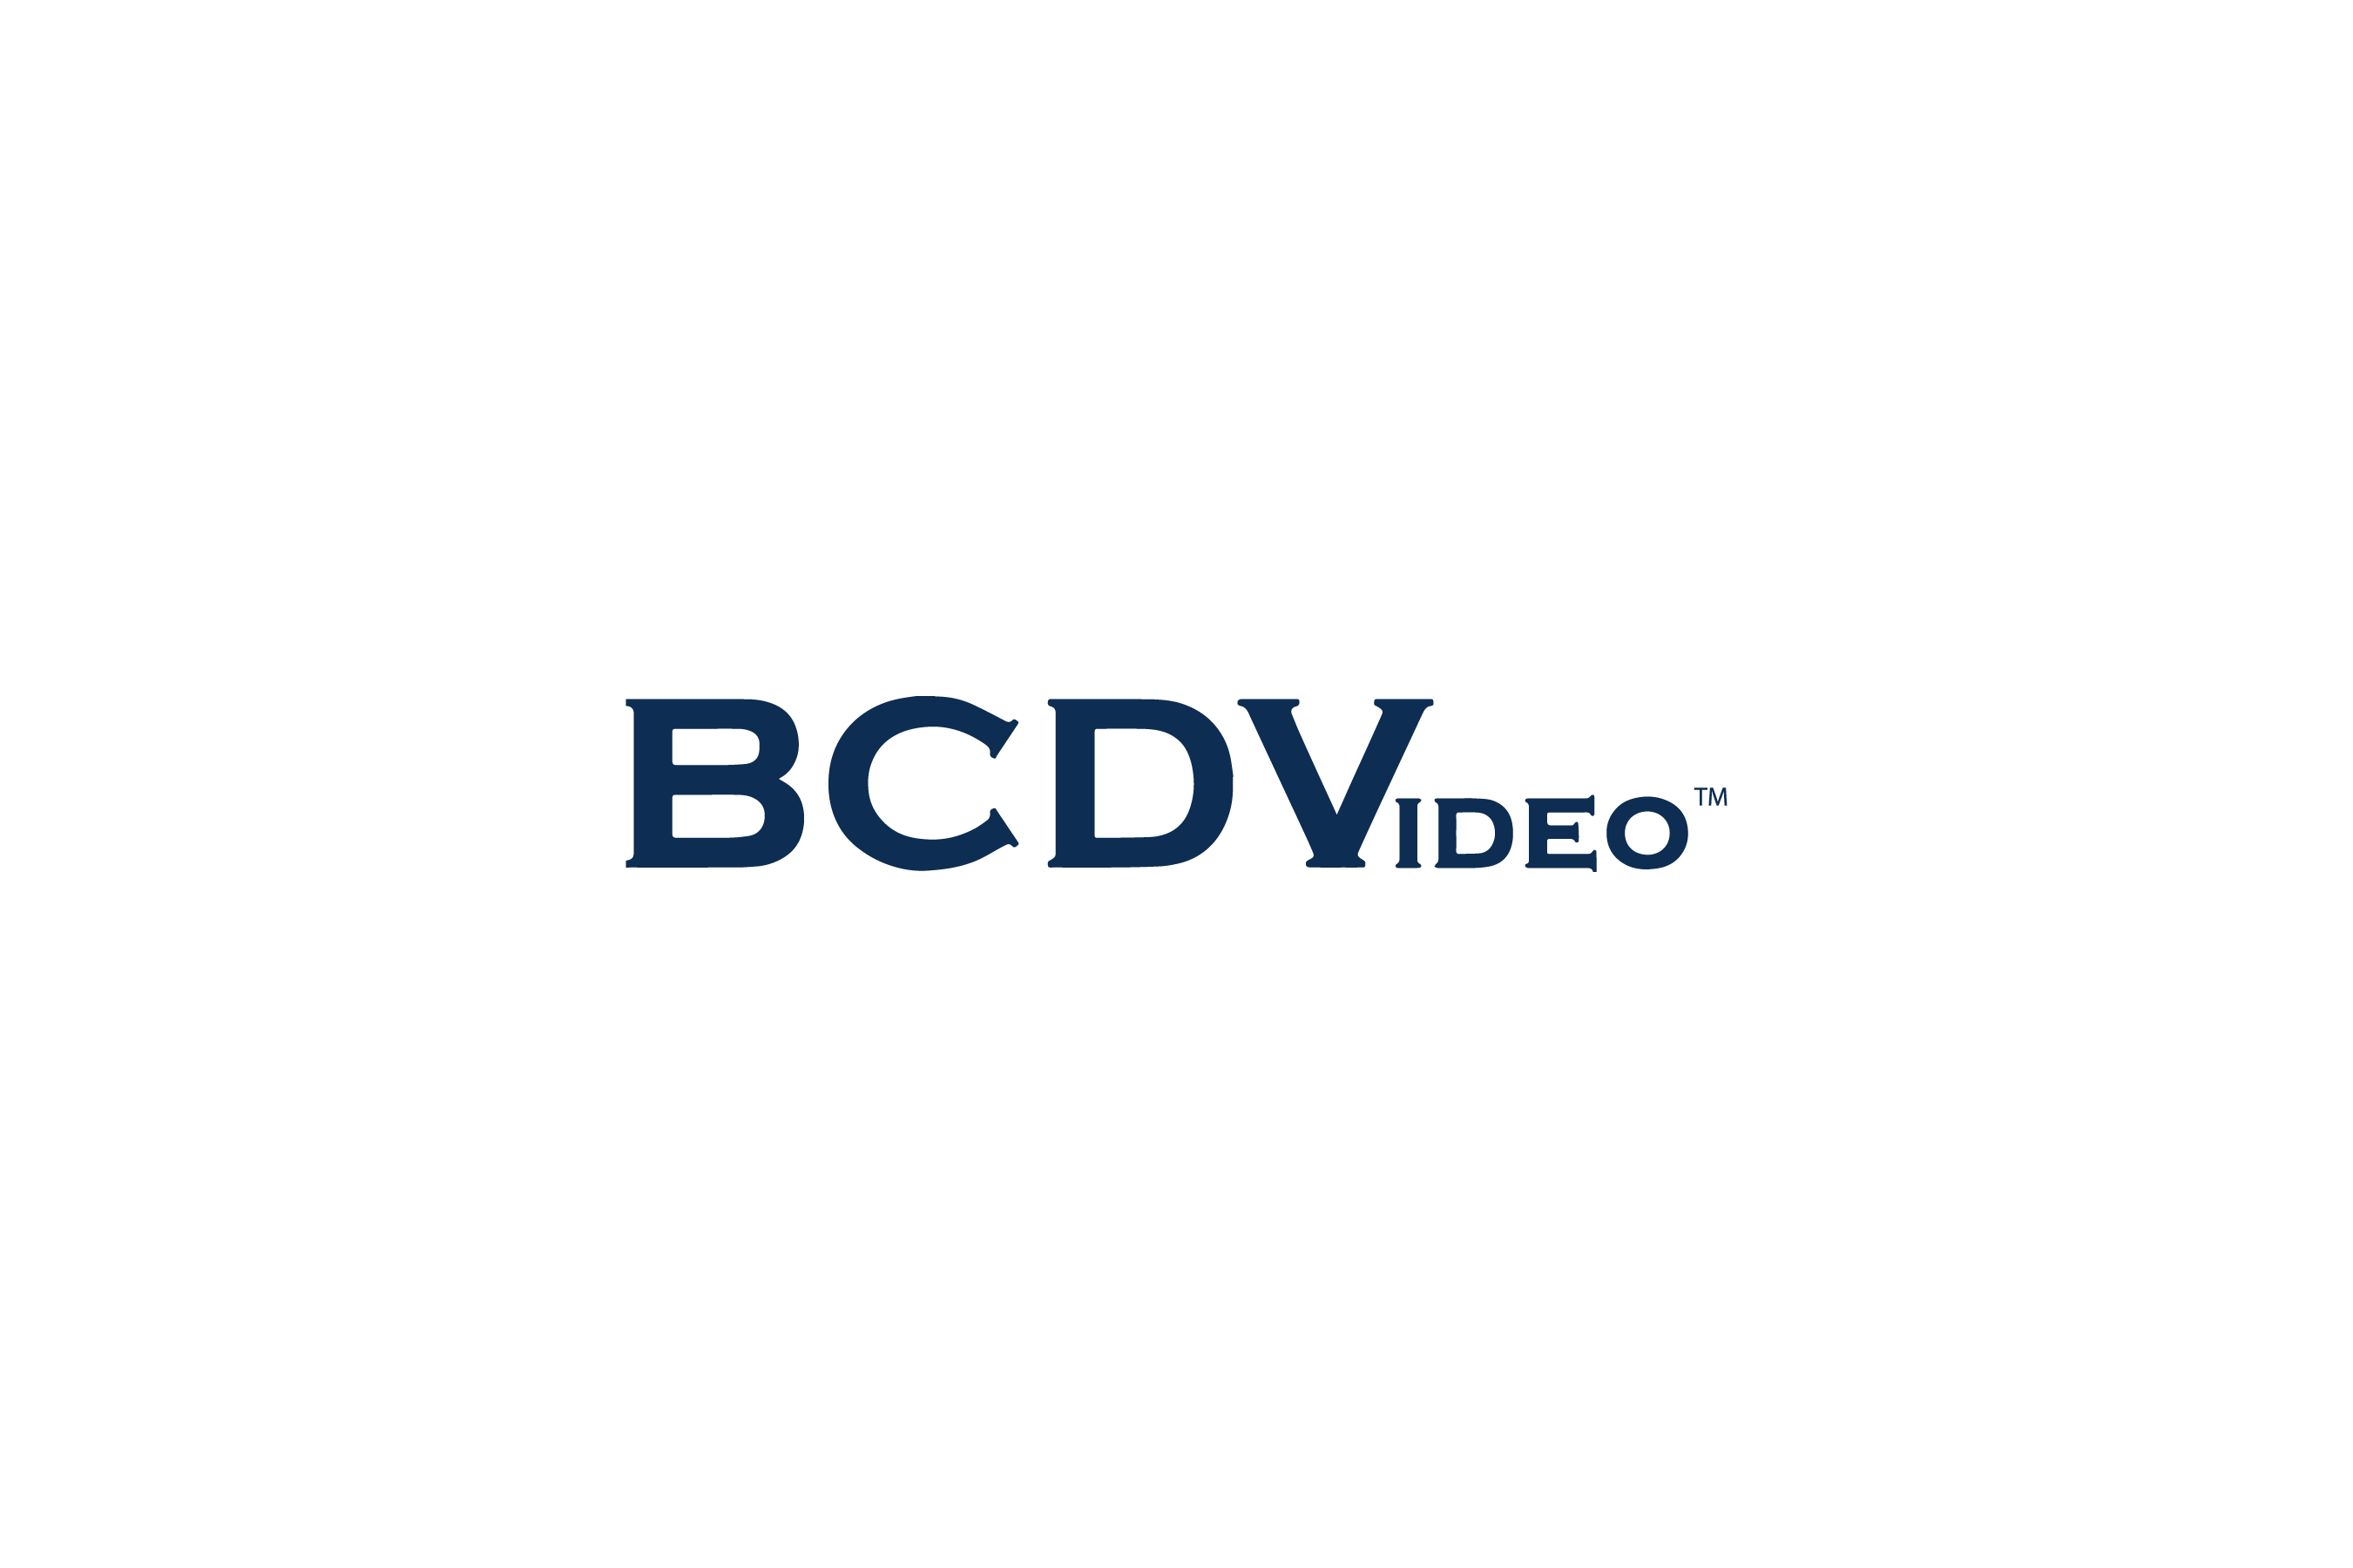 BCDV